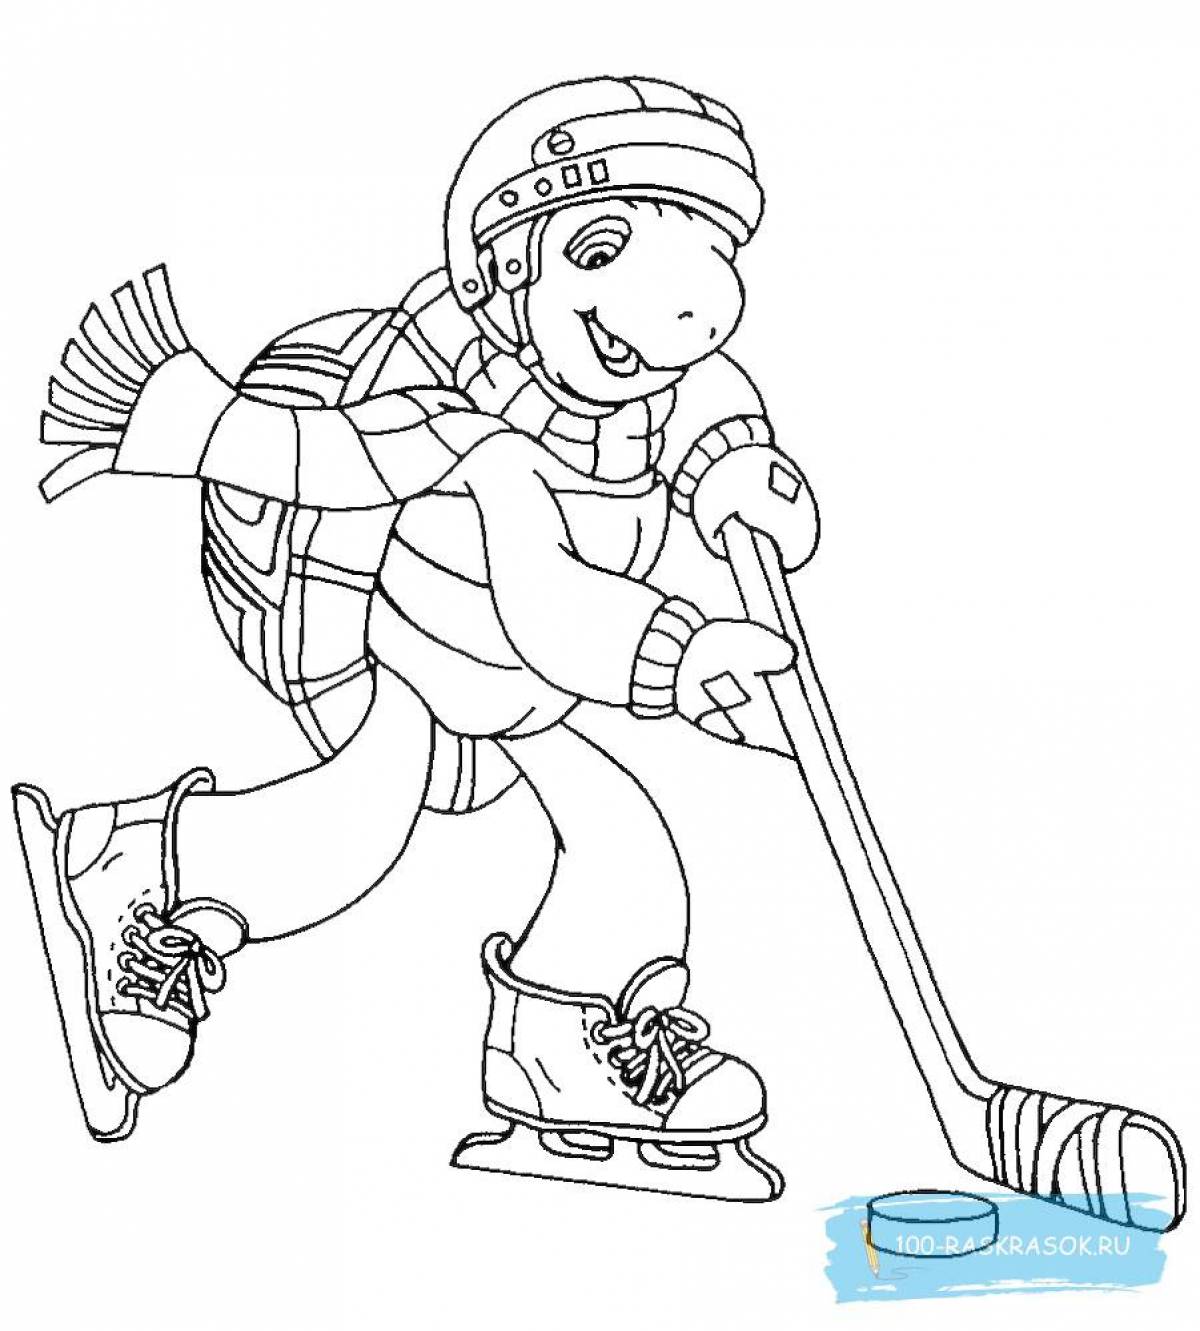 Славная страница раскраски зимних видов спорта для детей 6-7 лет